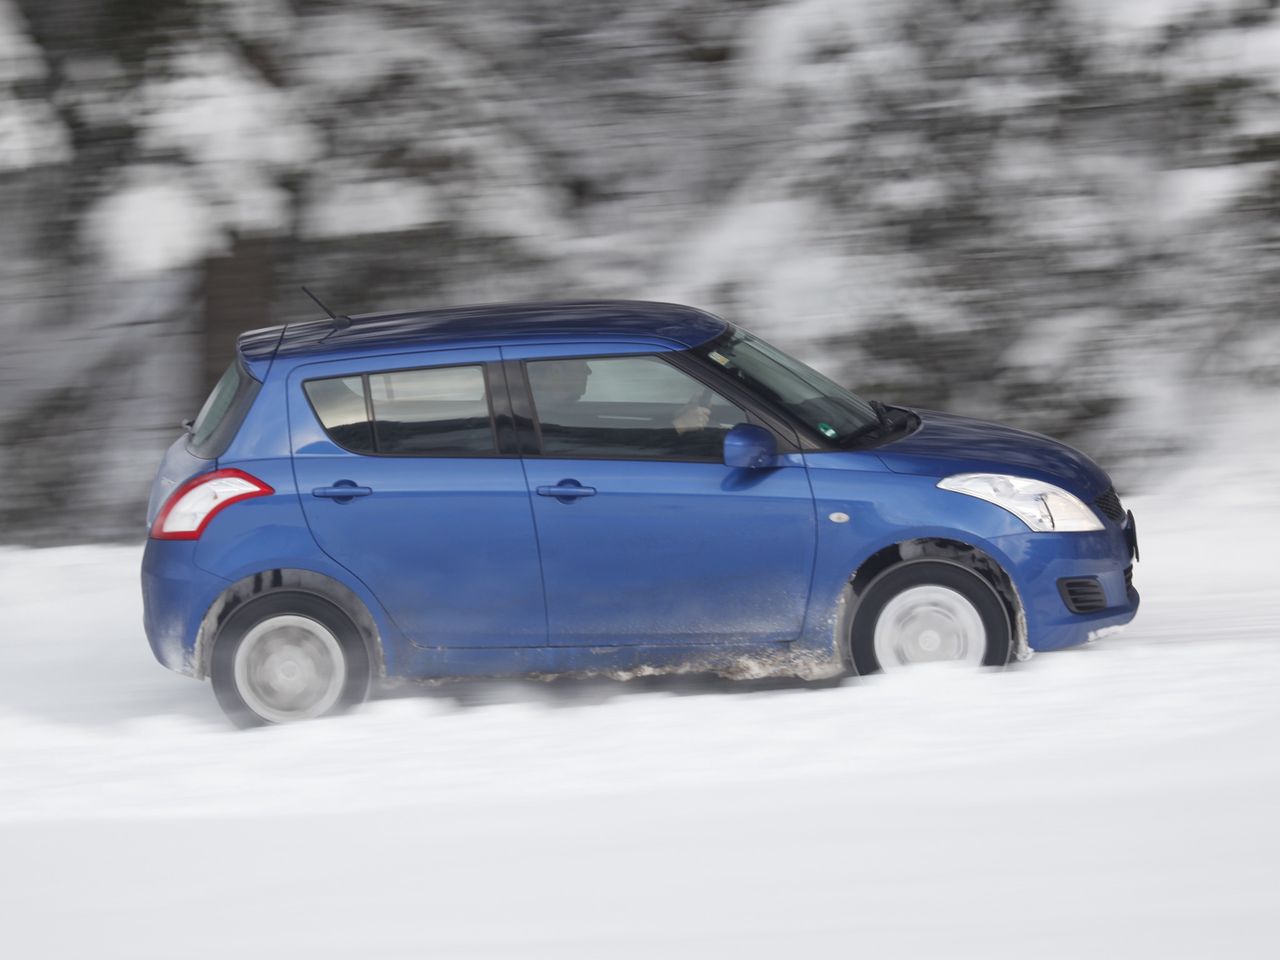 Suzuki Swift 4x4 - idealny na drogi, na których często pojawia się śnieg